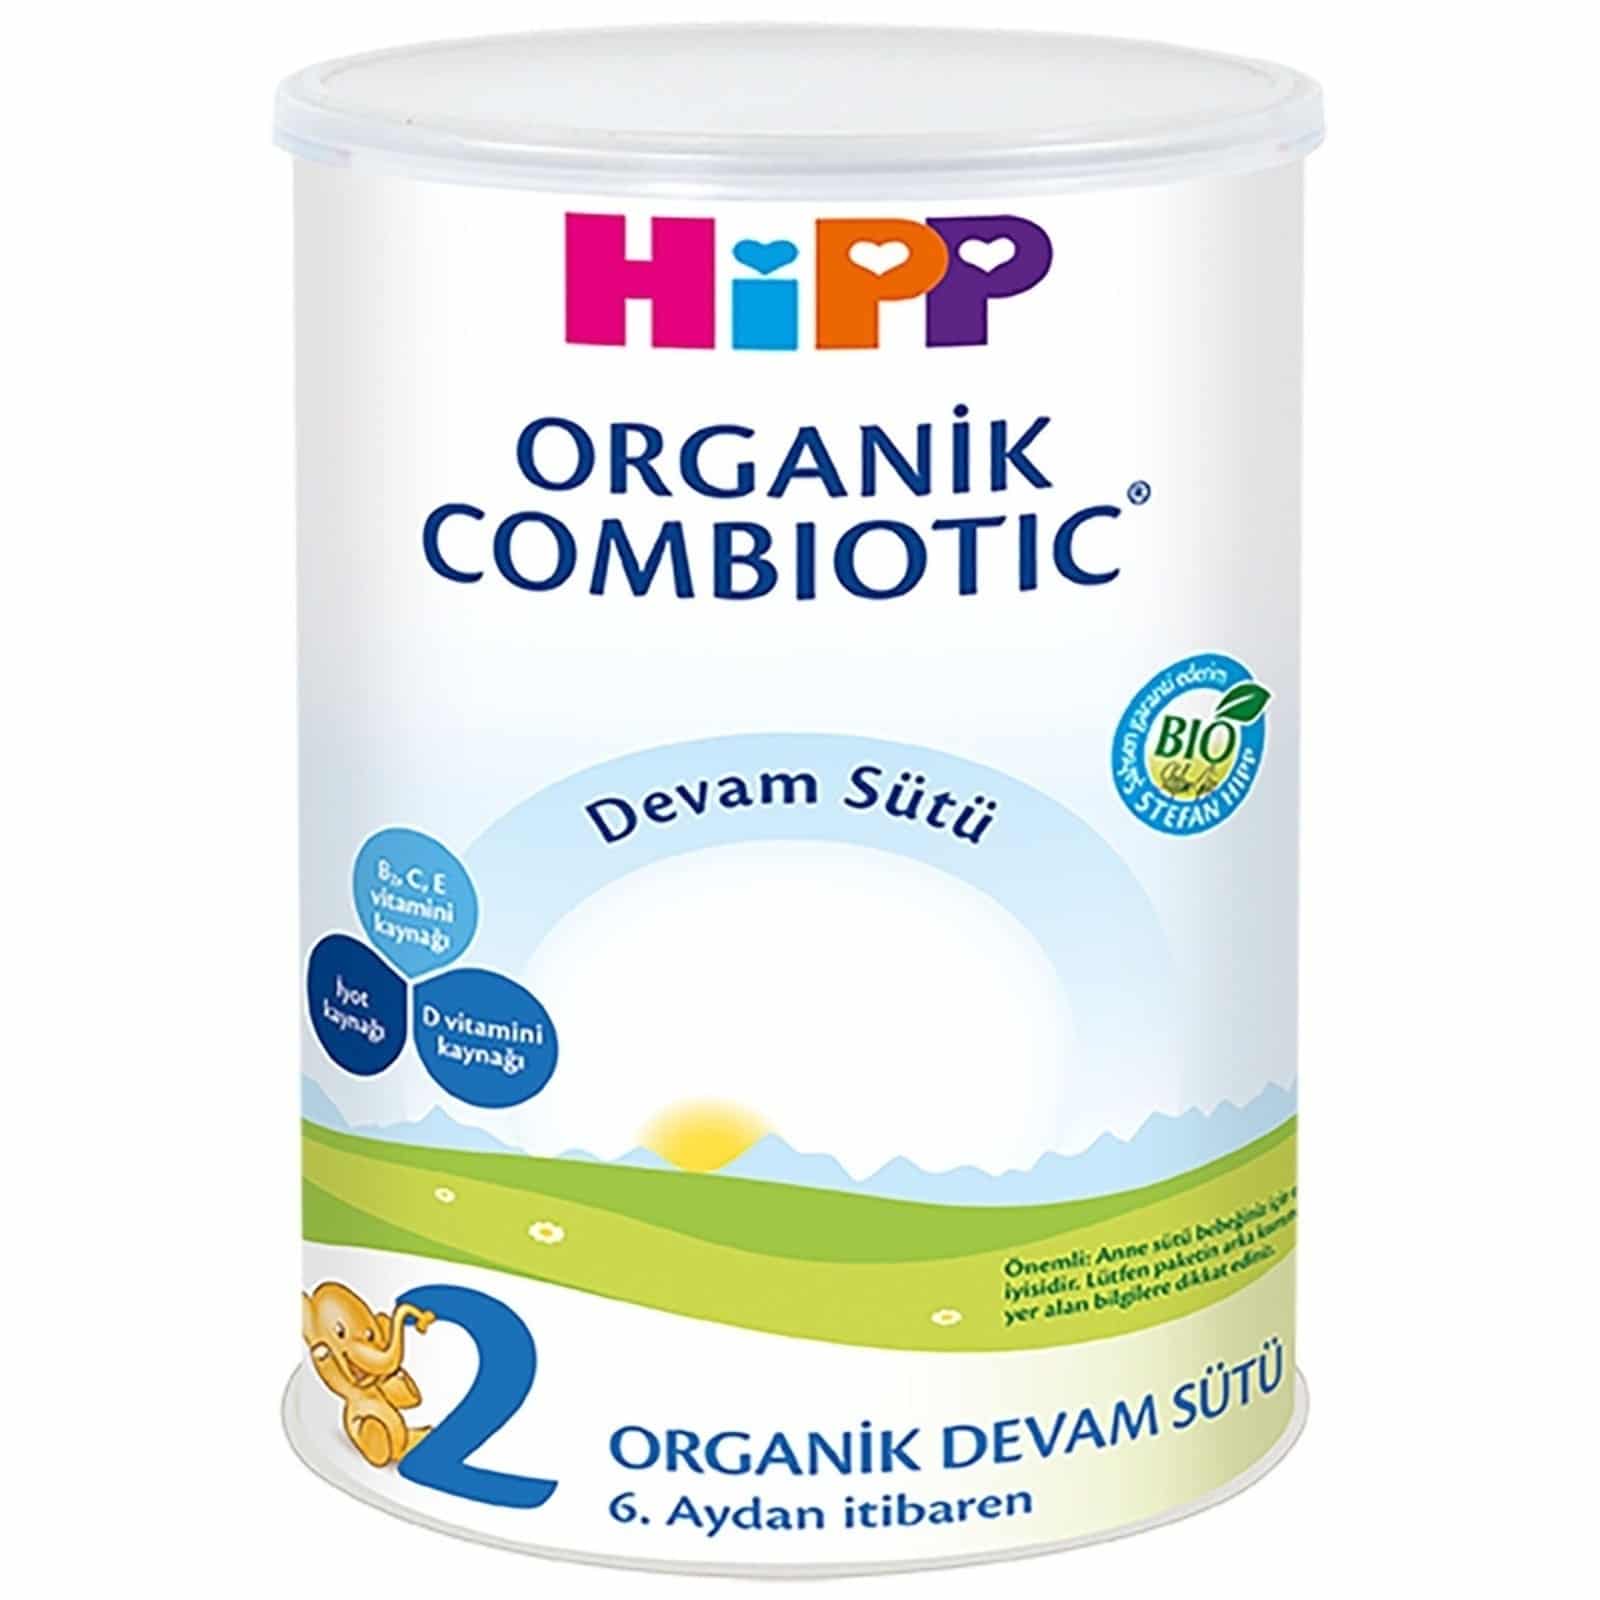 Hipp Organik Combiyotik Devam Sütü ürün resmi